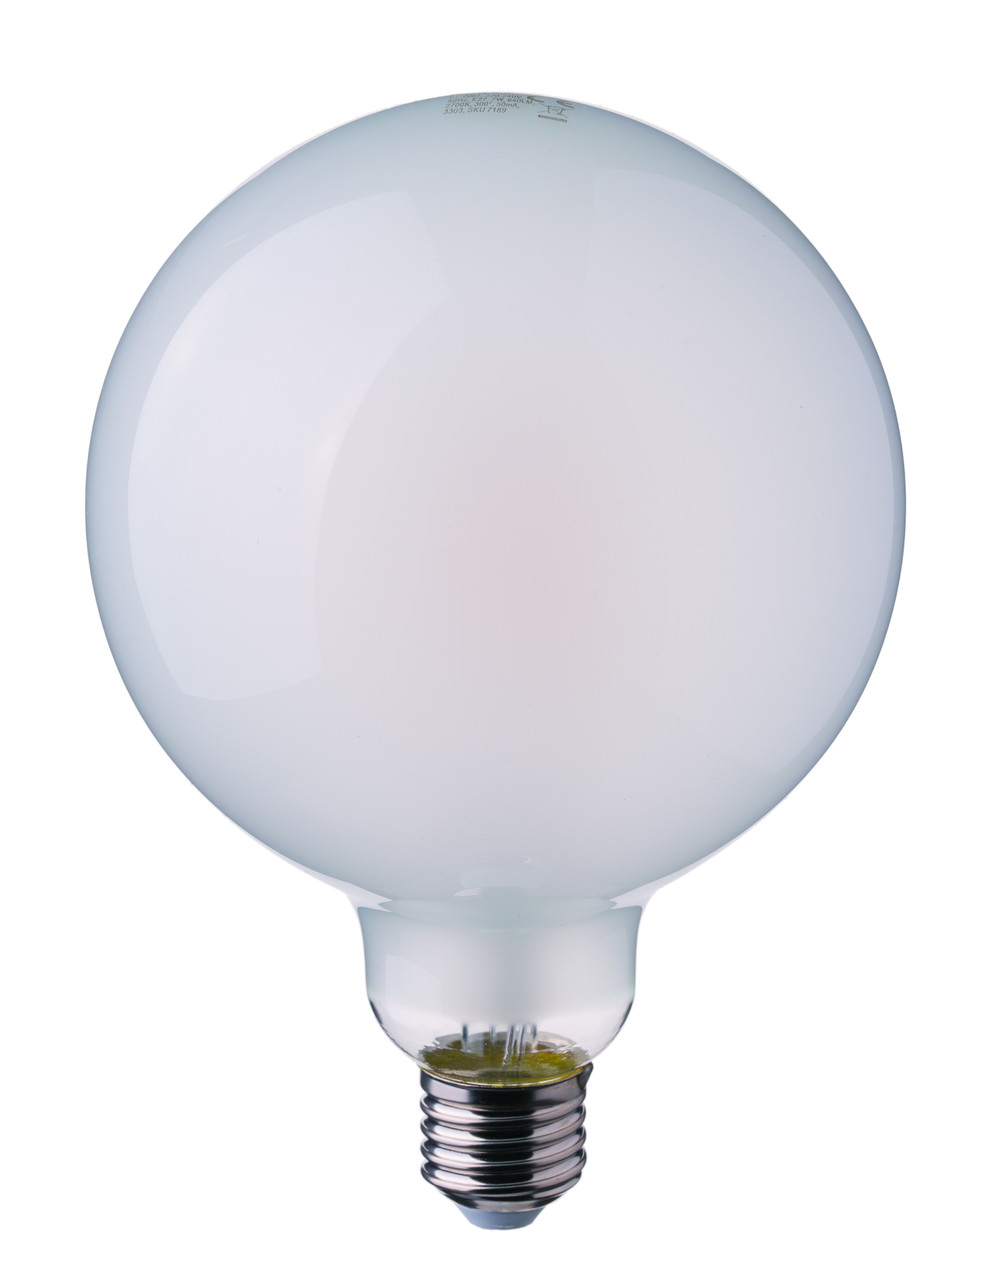 Филаментная лампа V-Tac 7 Вт, 840lm, G95, матовое стекло, Е27, 2700К